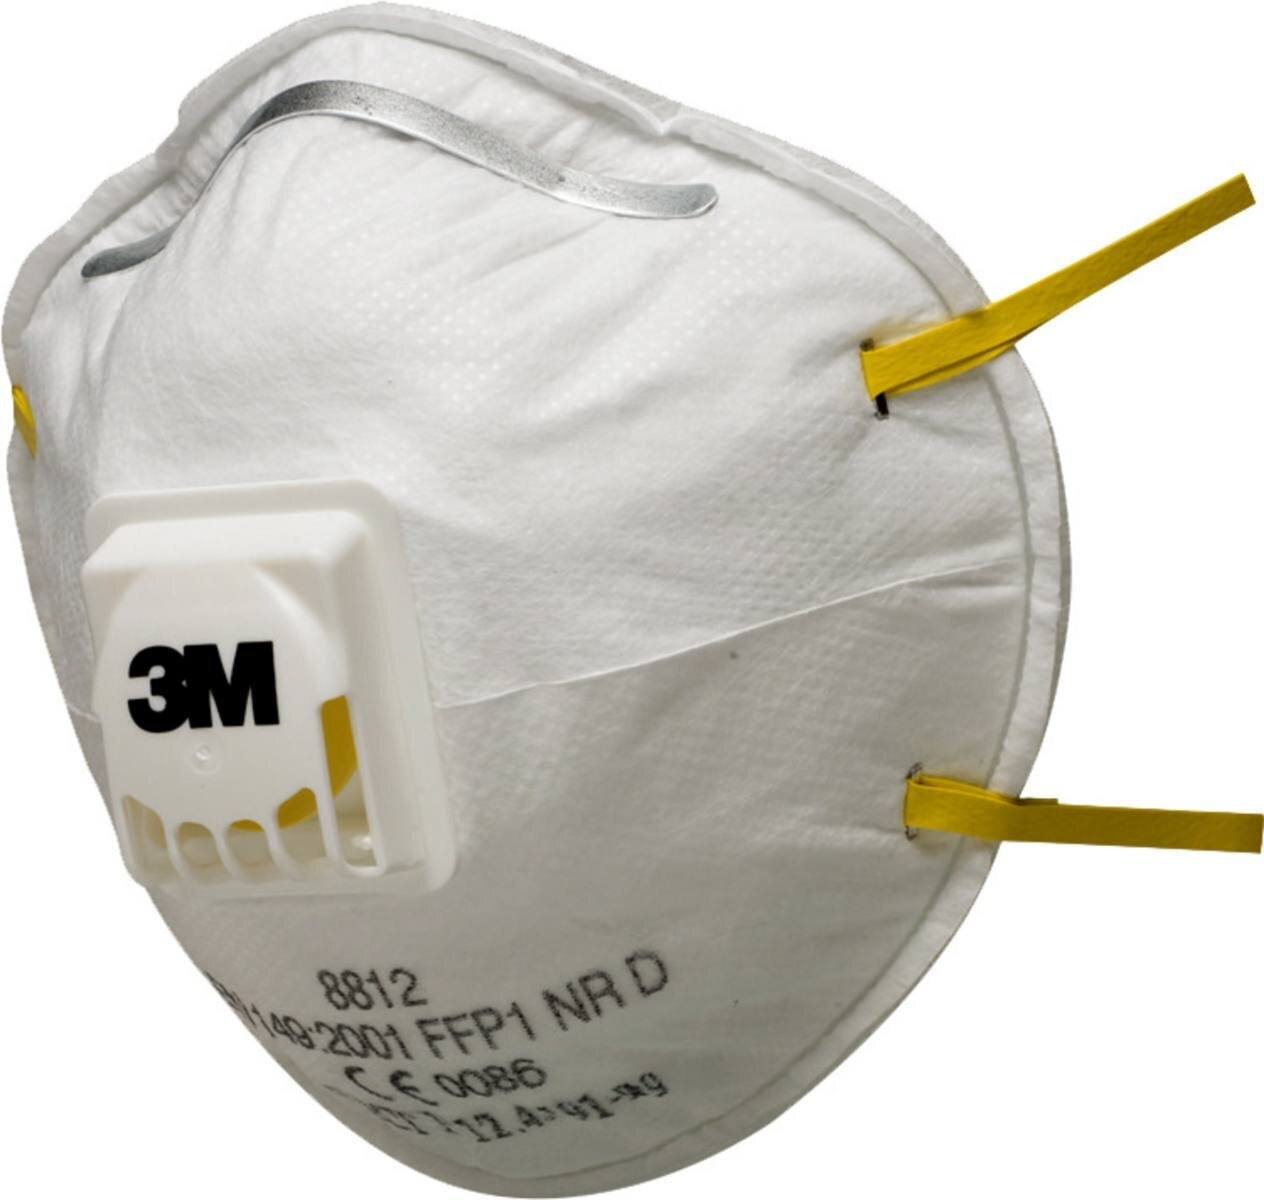 3M 8812 Atemschutzmaske FFP1 mit Cool-Flow Ausatemventil, bis zum 4-fachen des Grenzwertes